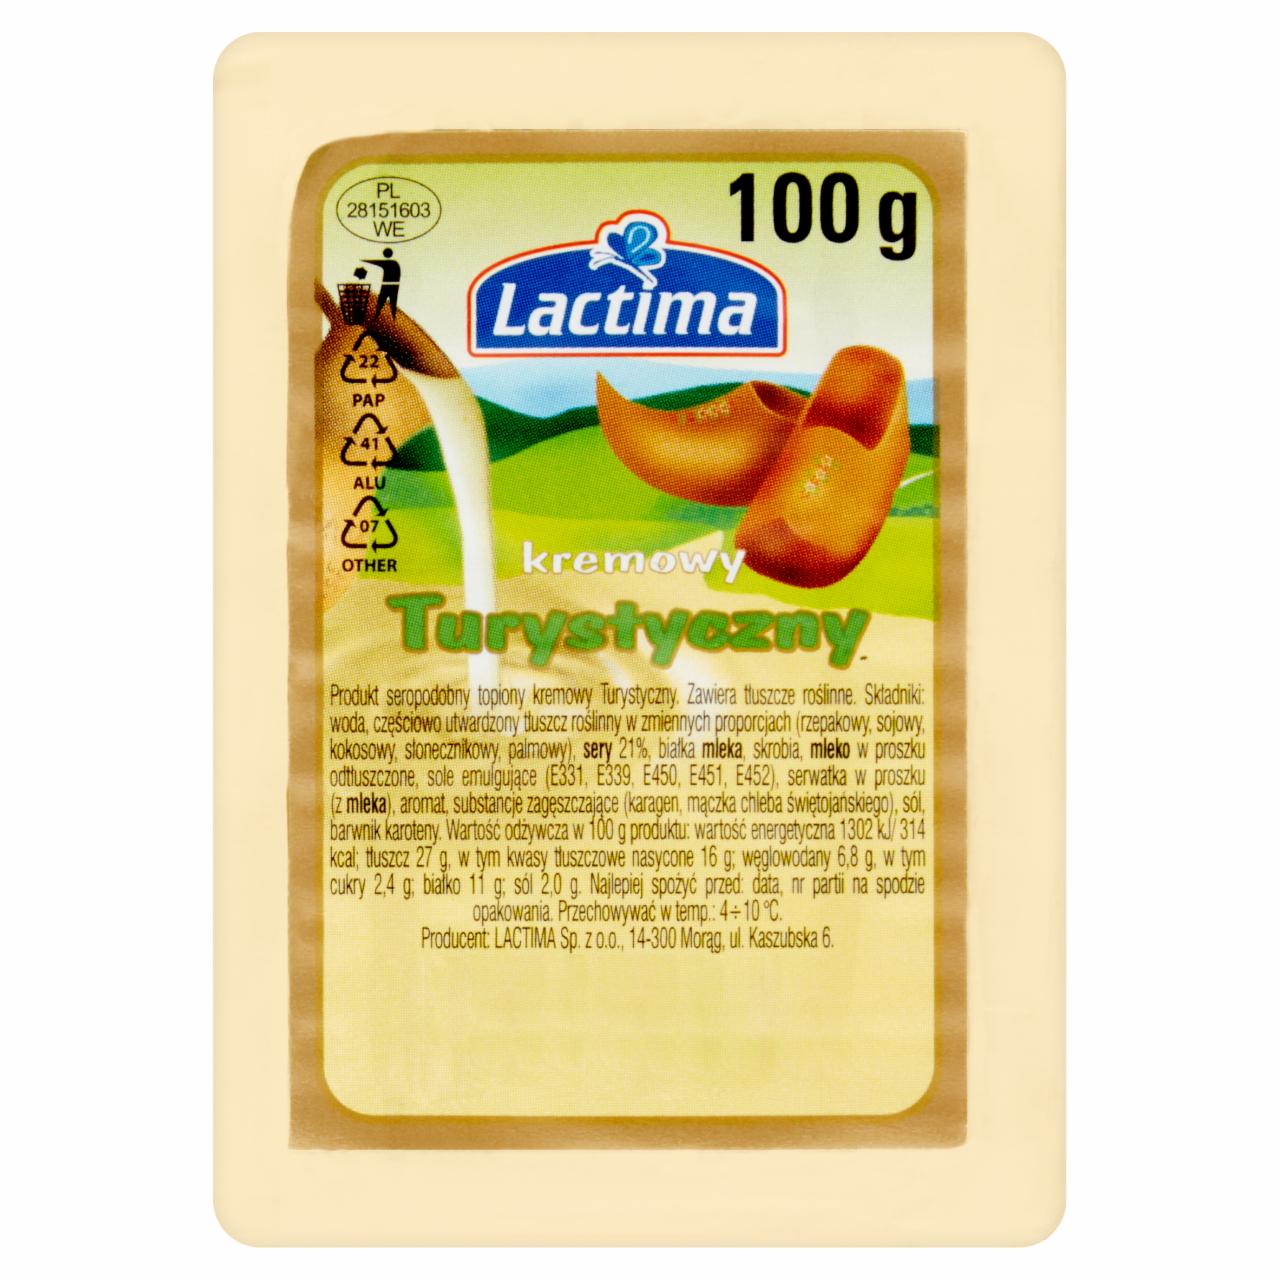 Zdjęcia - Lactima Produkt seropodobny topiony kremowy turystyczny 100 g